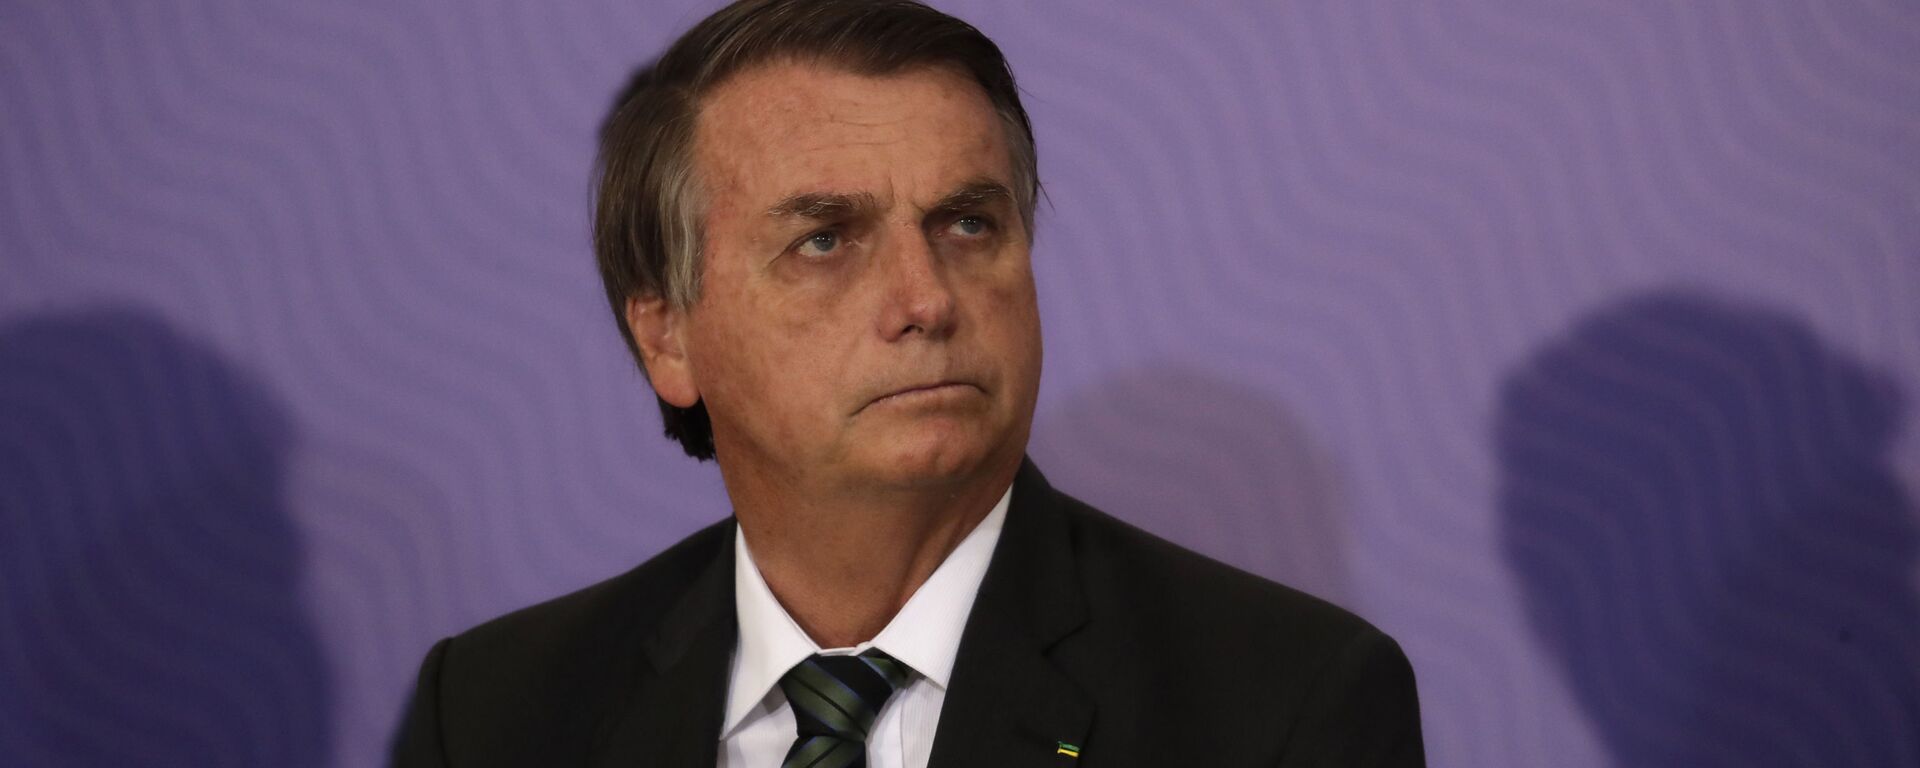 El presidente de Brasil, Jair Bolsonaro - Sputnik Mundo, 1920, 19.07.2021